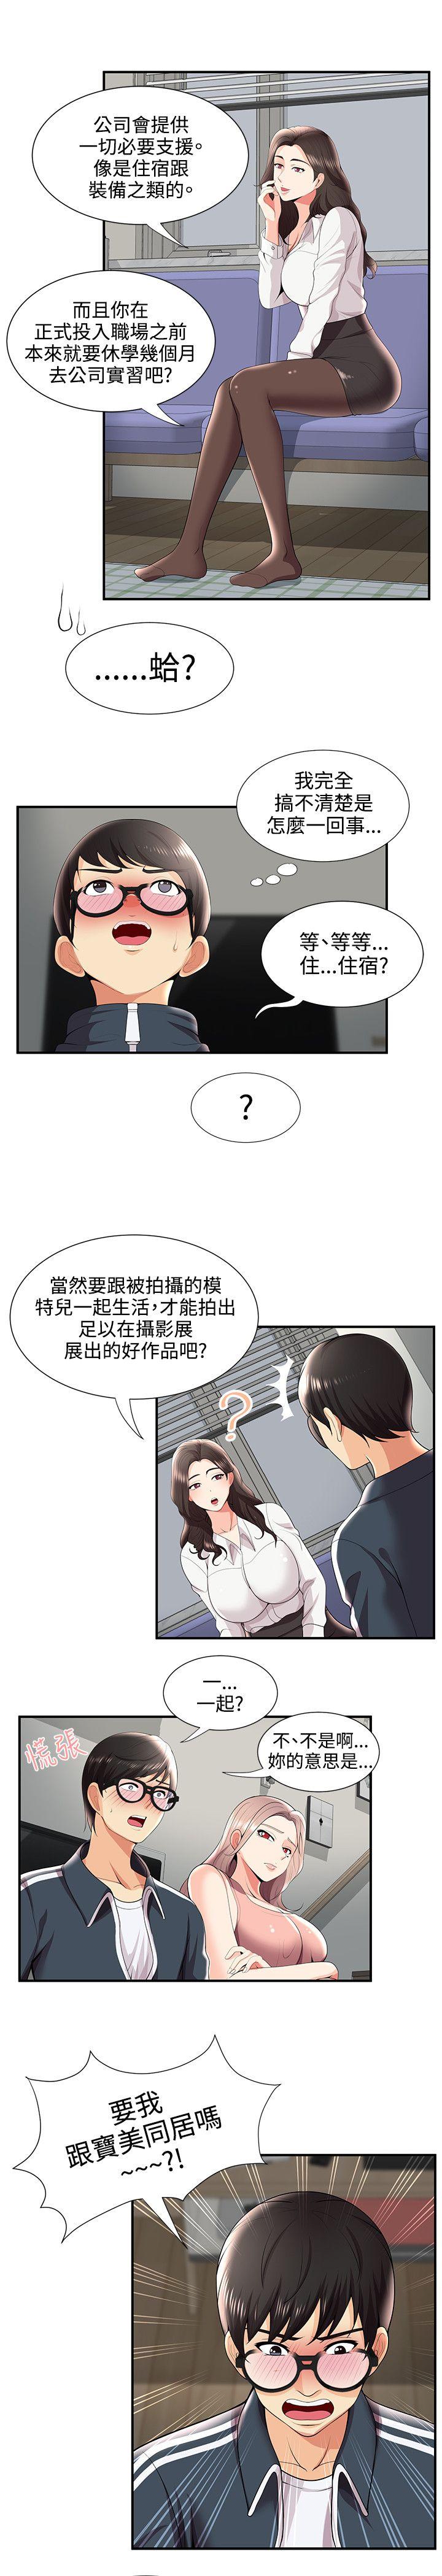 韩国污漫画 無法自拔的口紅膠 第26话 7